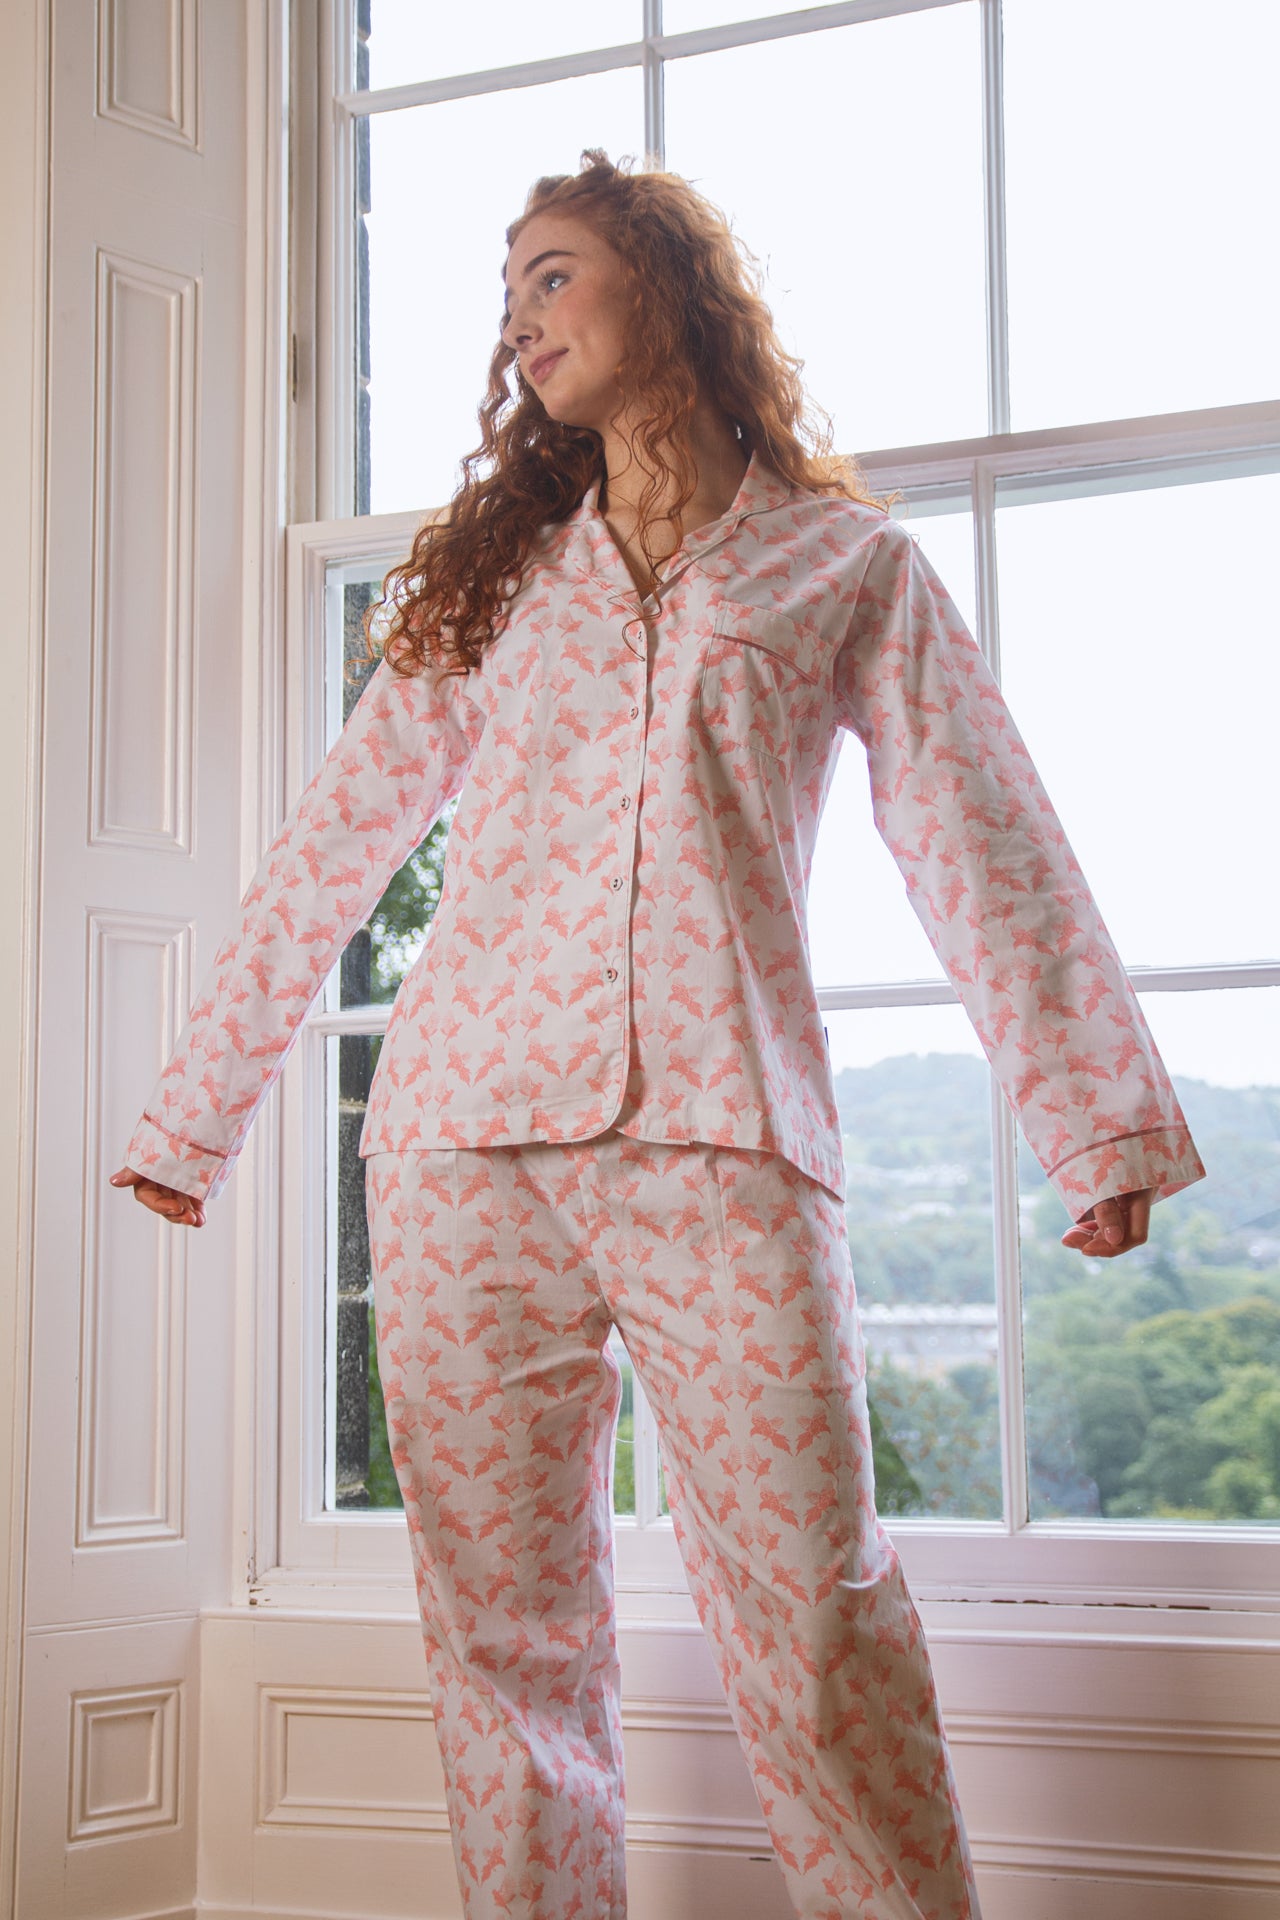 Printed cotton pyjamas